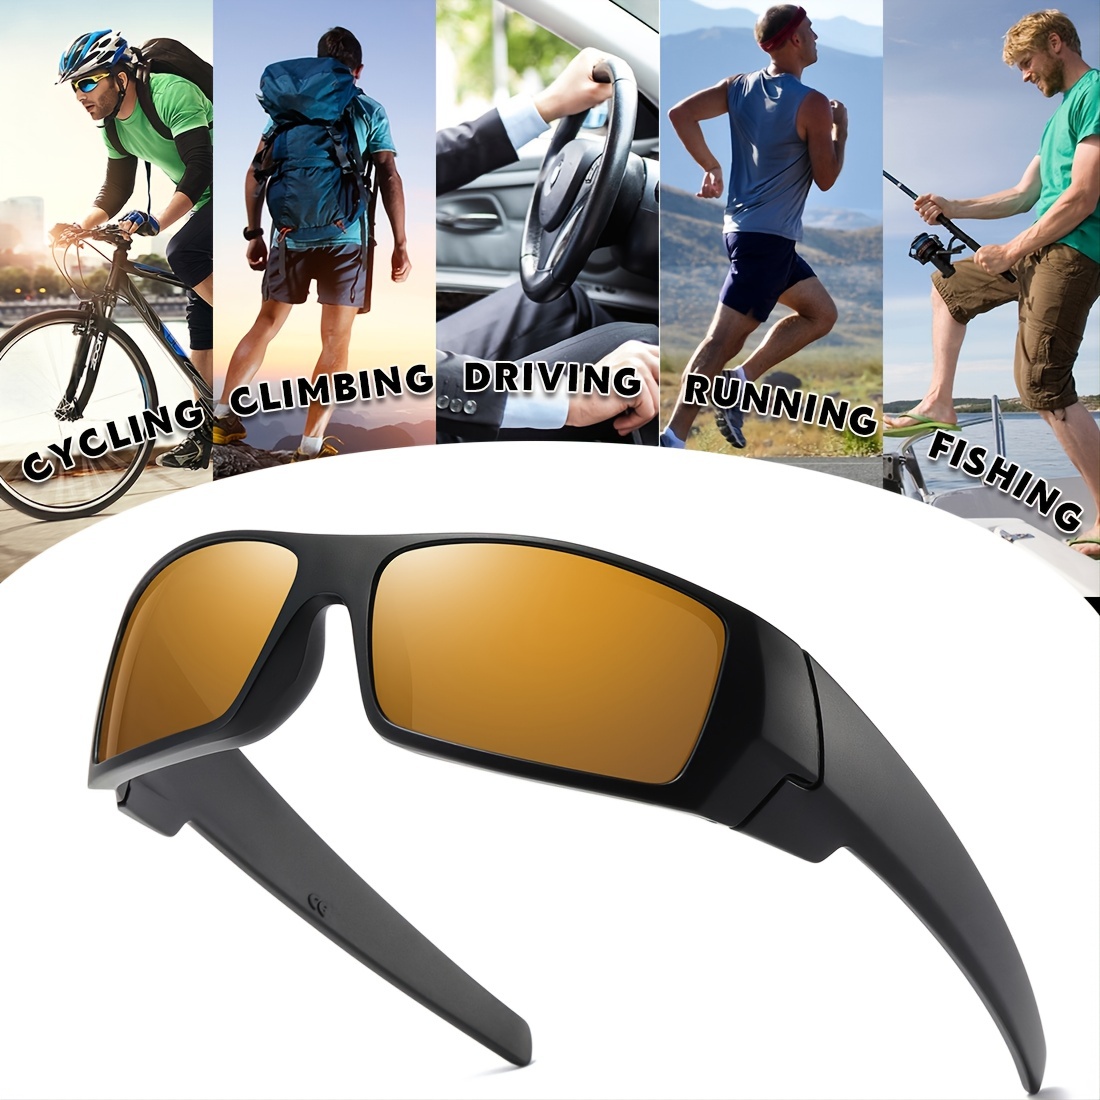 Gafas de sol de moda, unisex, cómodas monturas, gafas, protección solar,  gafas de sol para mochileros, ciclismo, escalada, camping, cosplay. , azul  claro Sunnimix Gafas de sol de moda